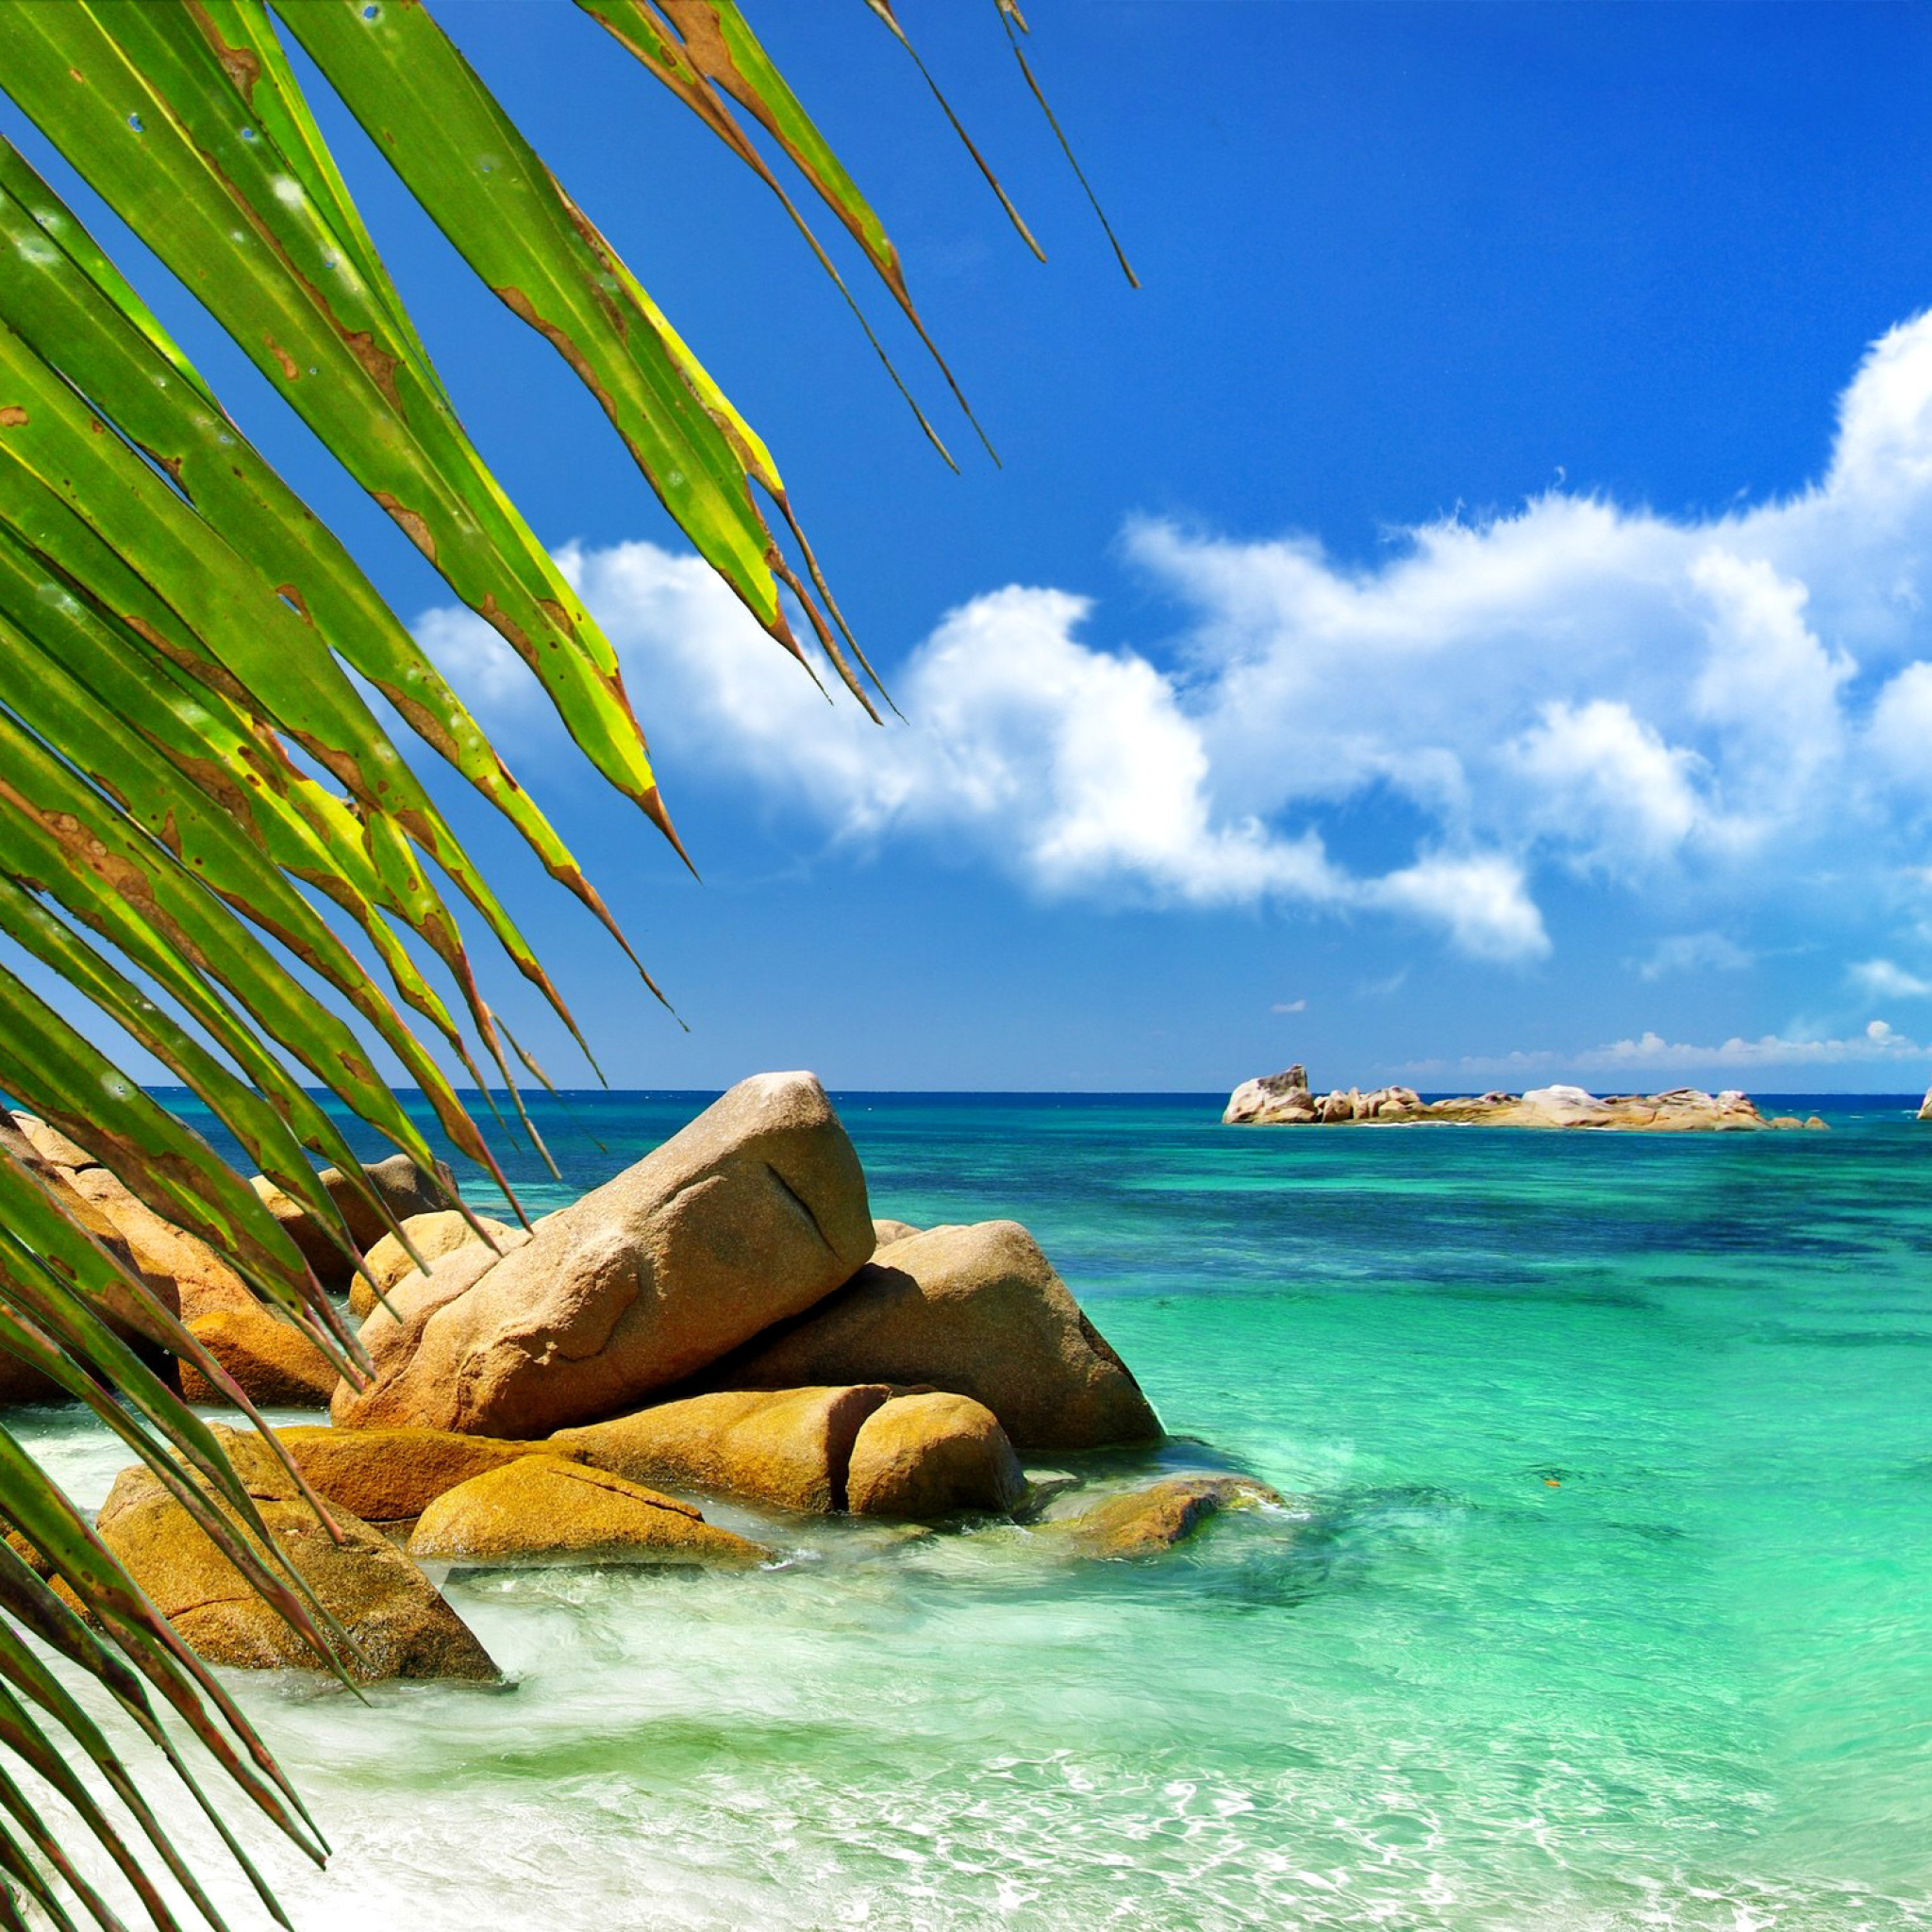 Обои Aruba Luxury Hotel and Beach 2048x2048